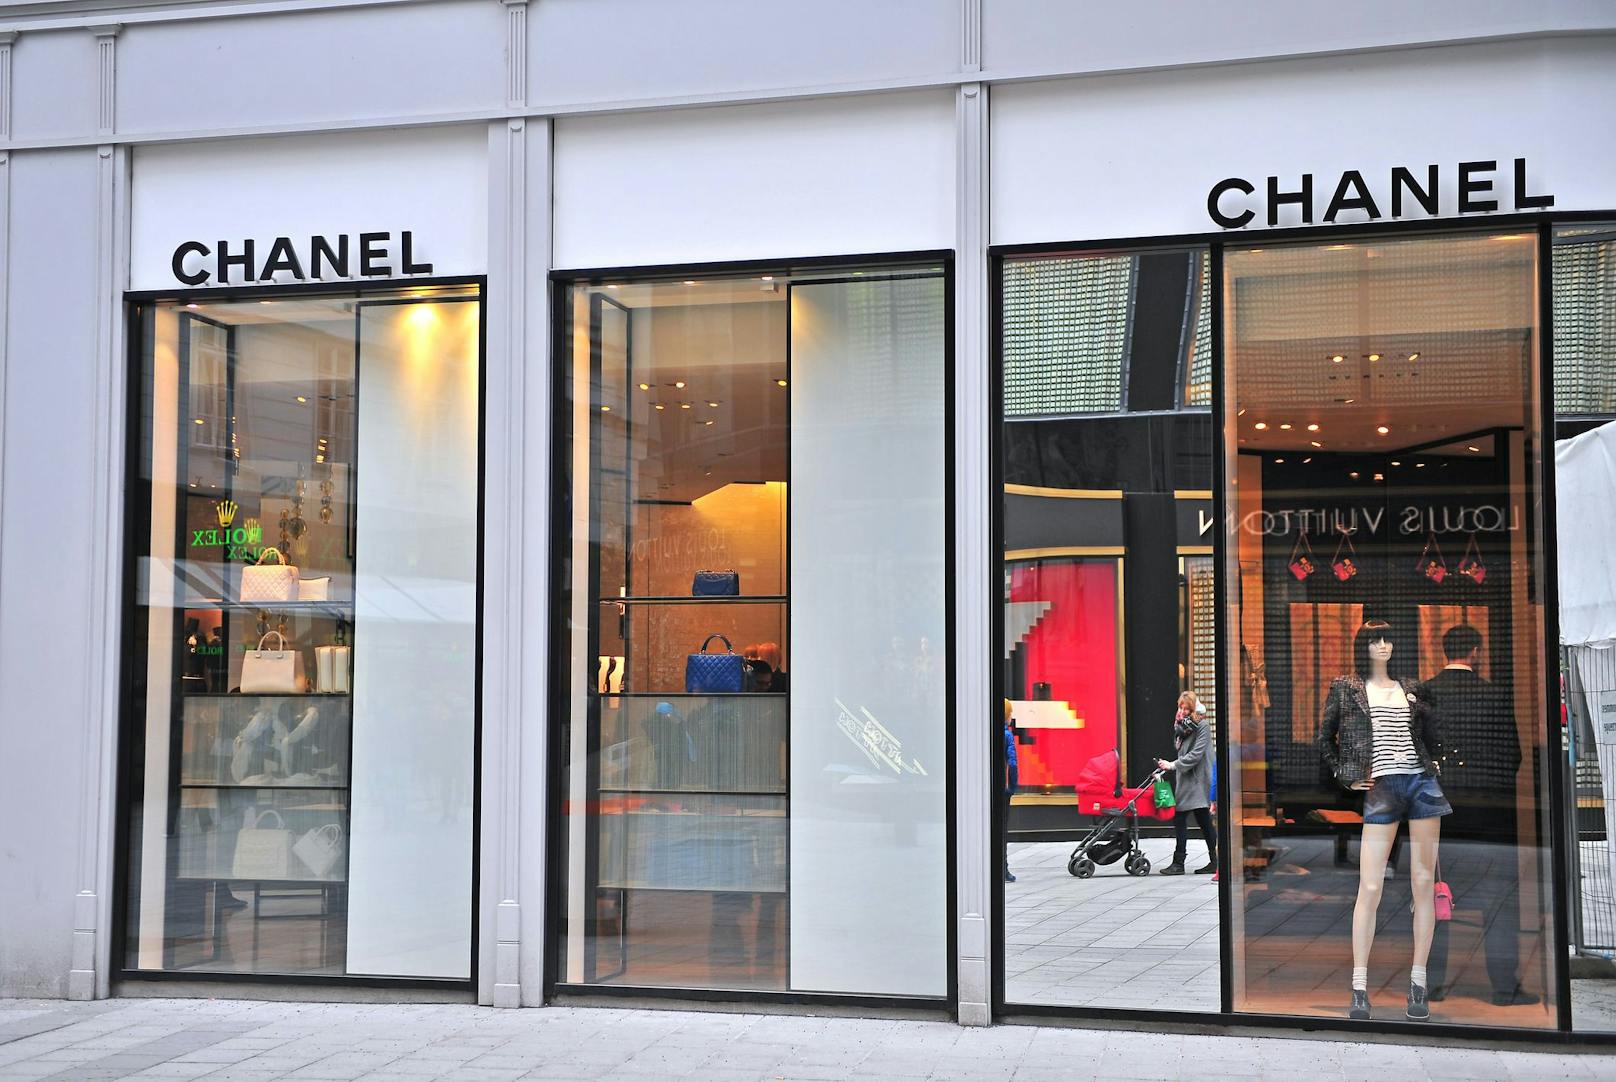 Seit 2018 verzichtet Luxus-Label Chanel auf Pelz und auch Exotenleder. 